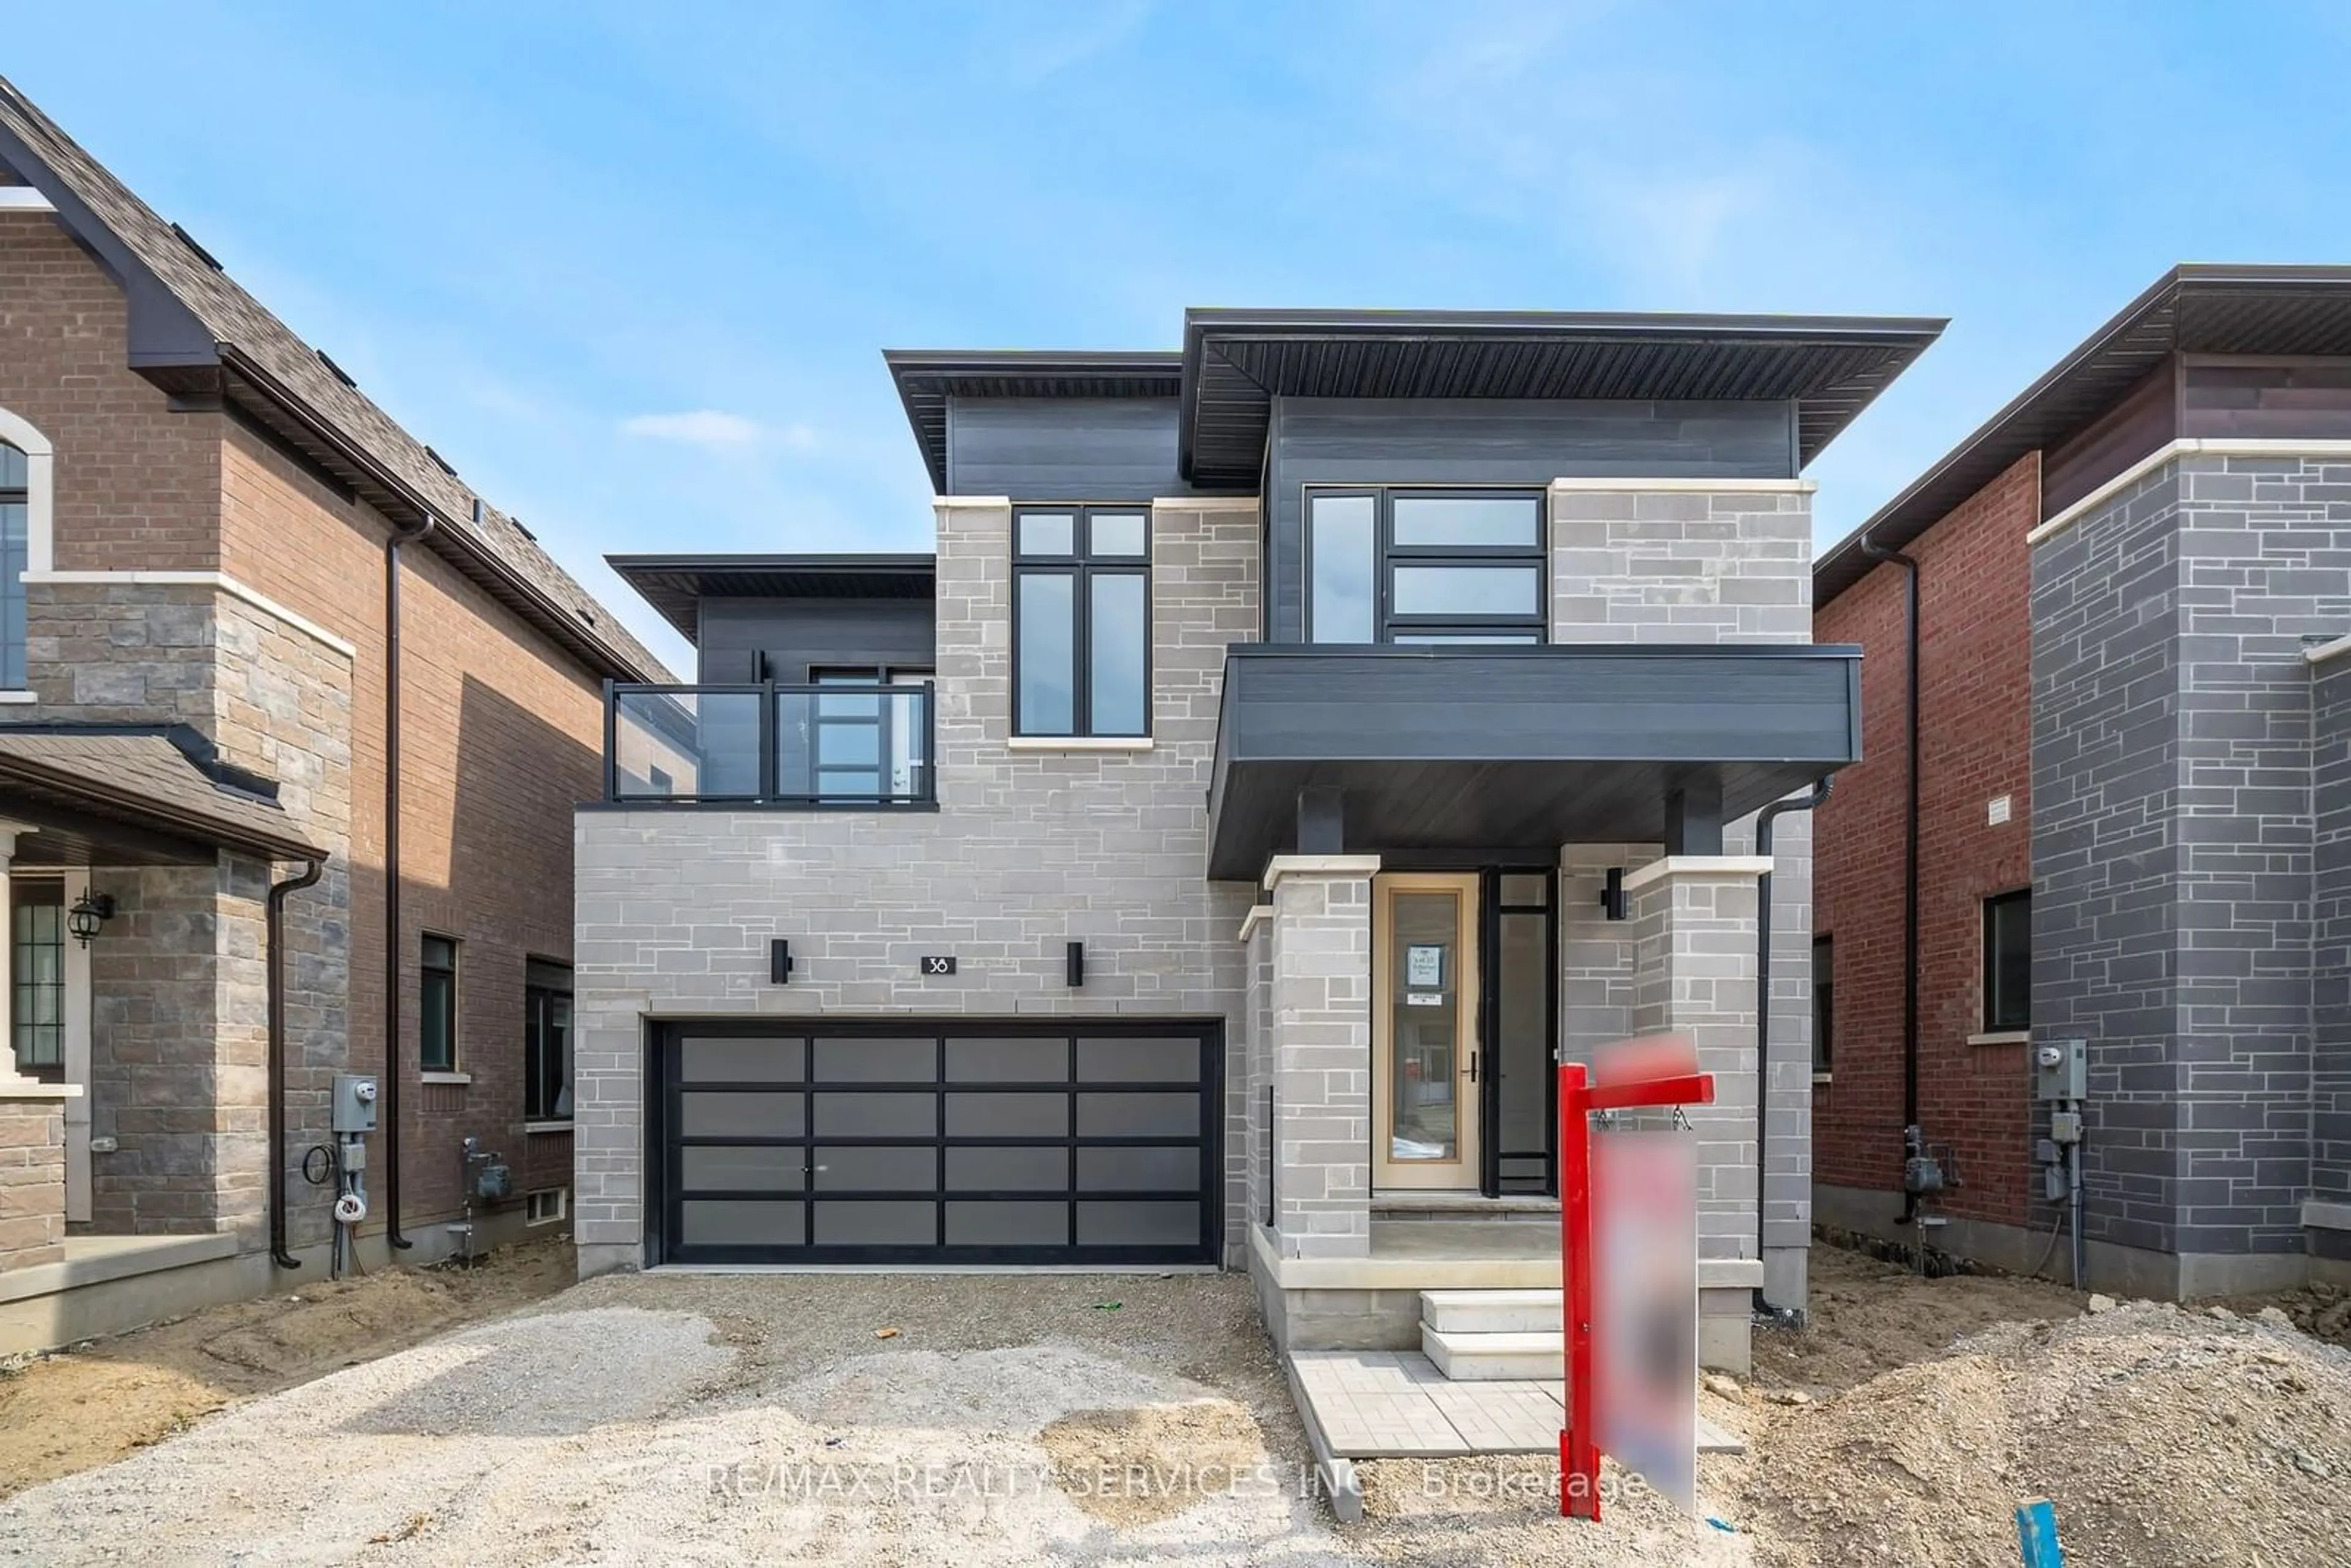 Home with brick exterior material for 38 Duxbury Rd, Brampton Ontario L6R 4E3